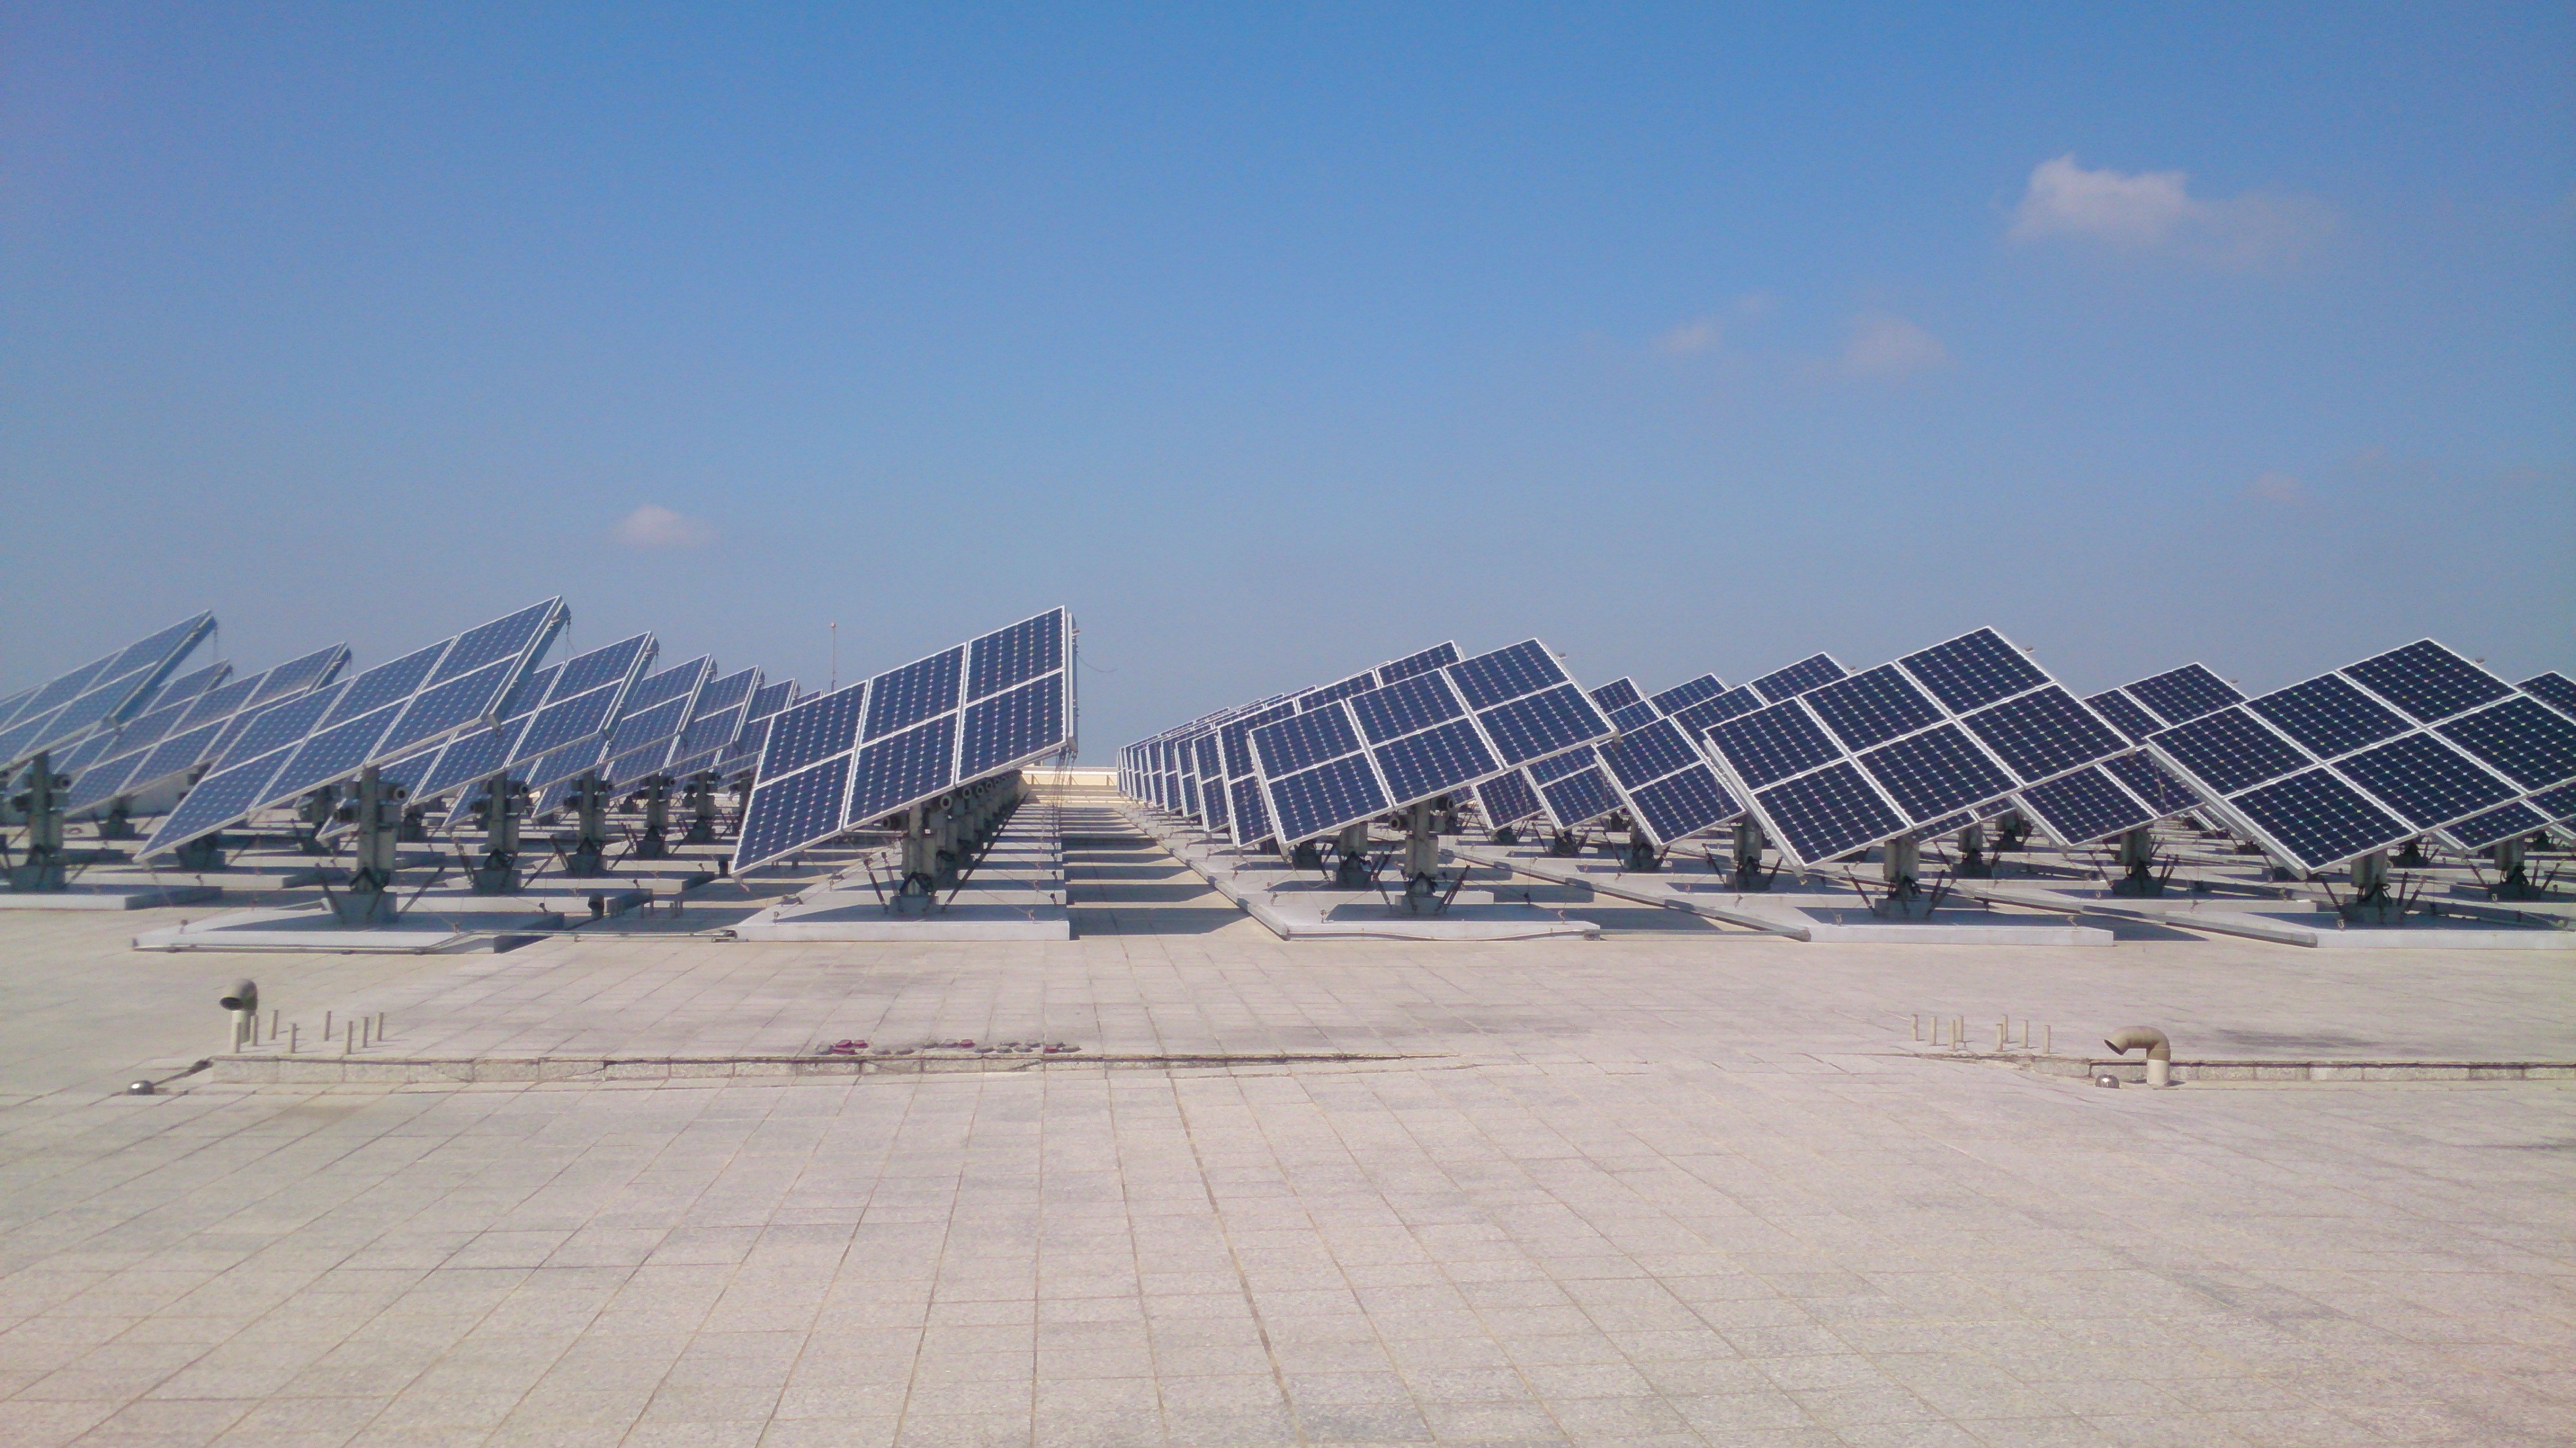 屋頂型太陽能建置利多，加快太陽光電設置速度